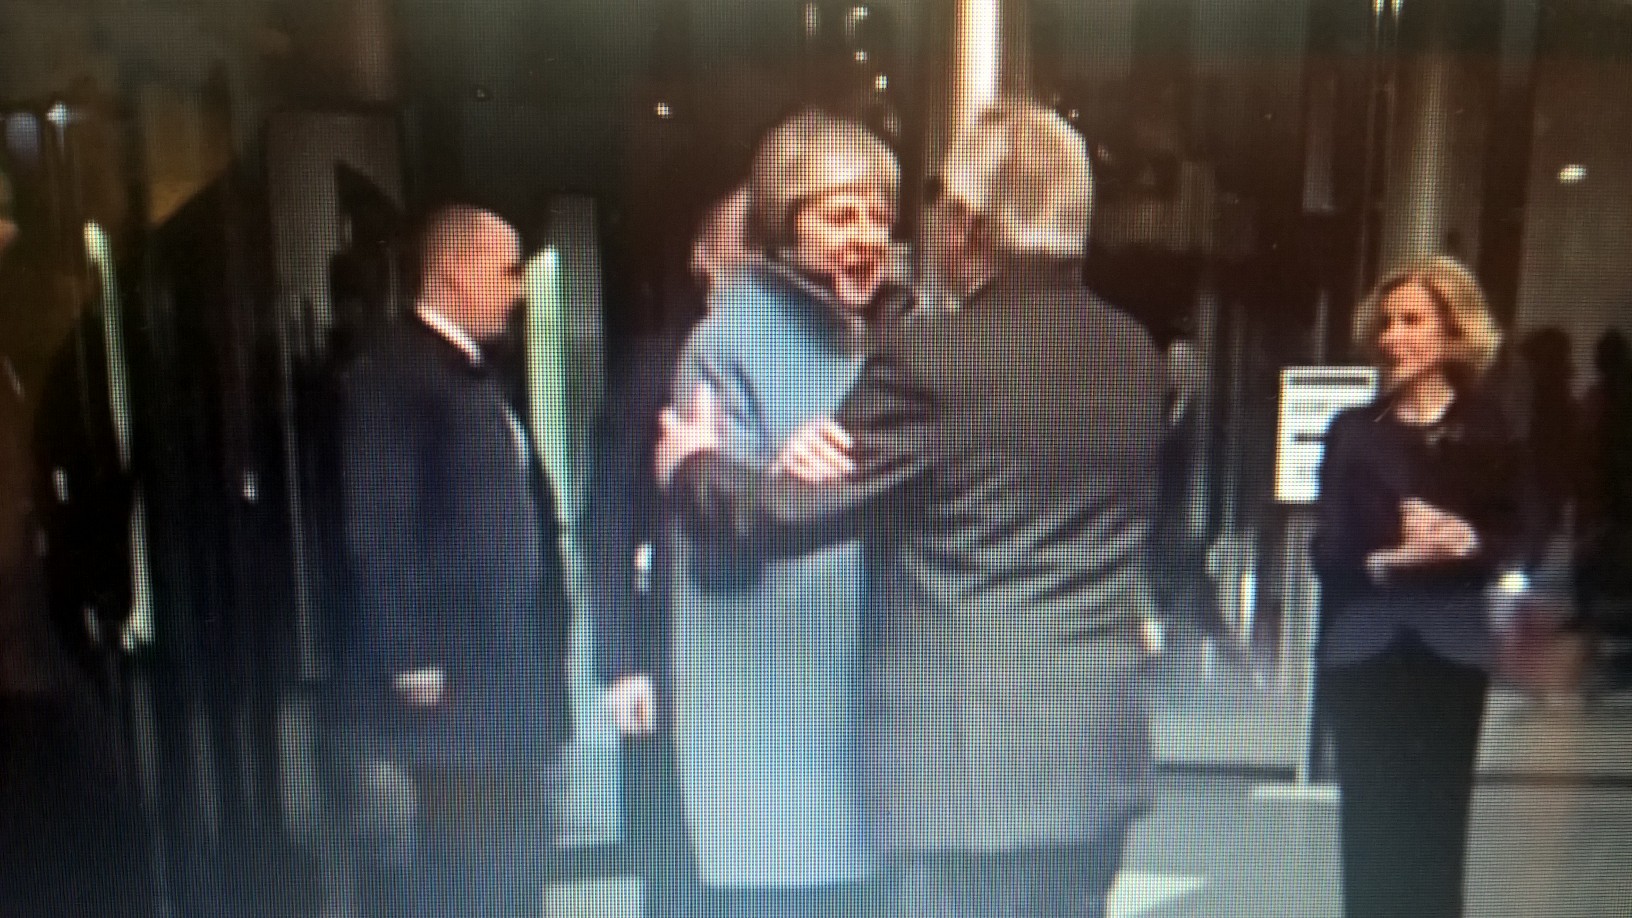 Mrs May meets President Juncker